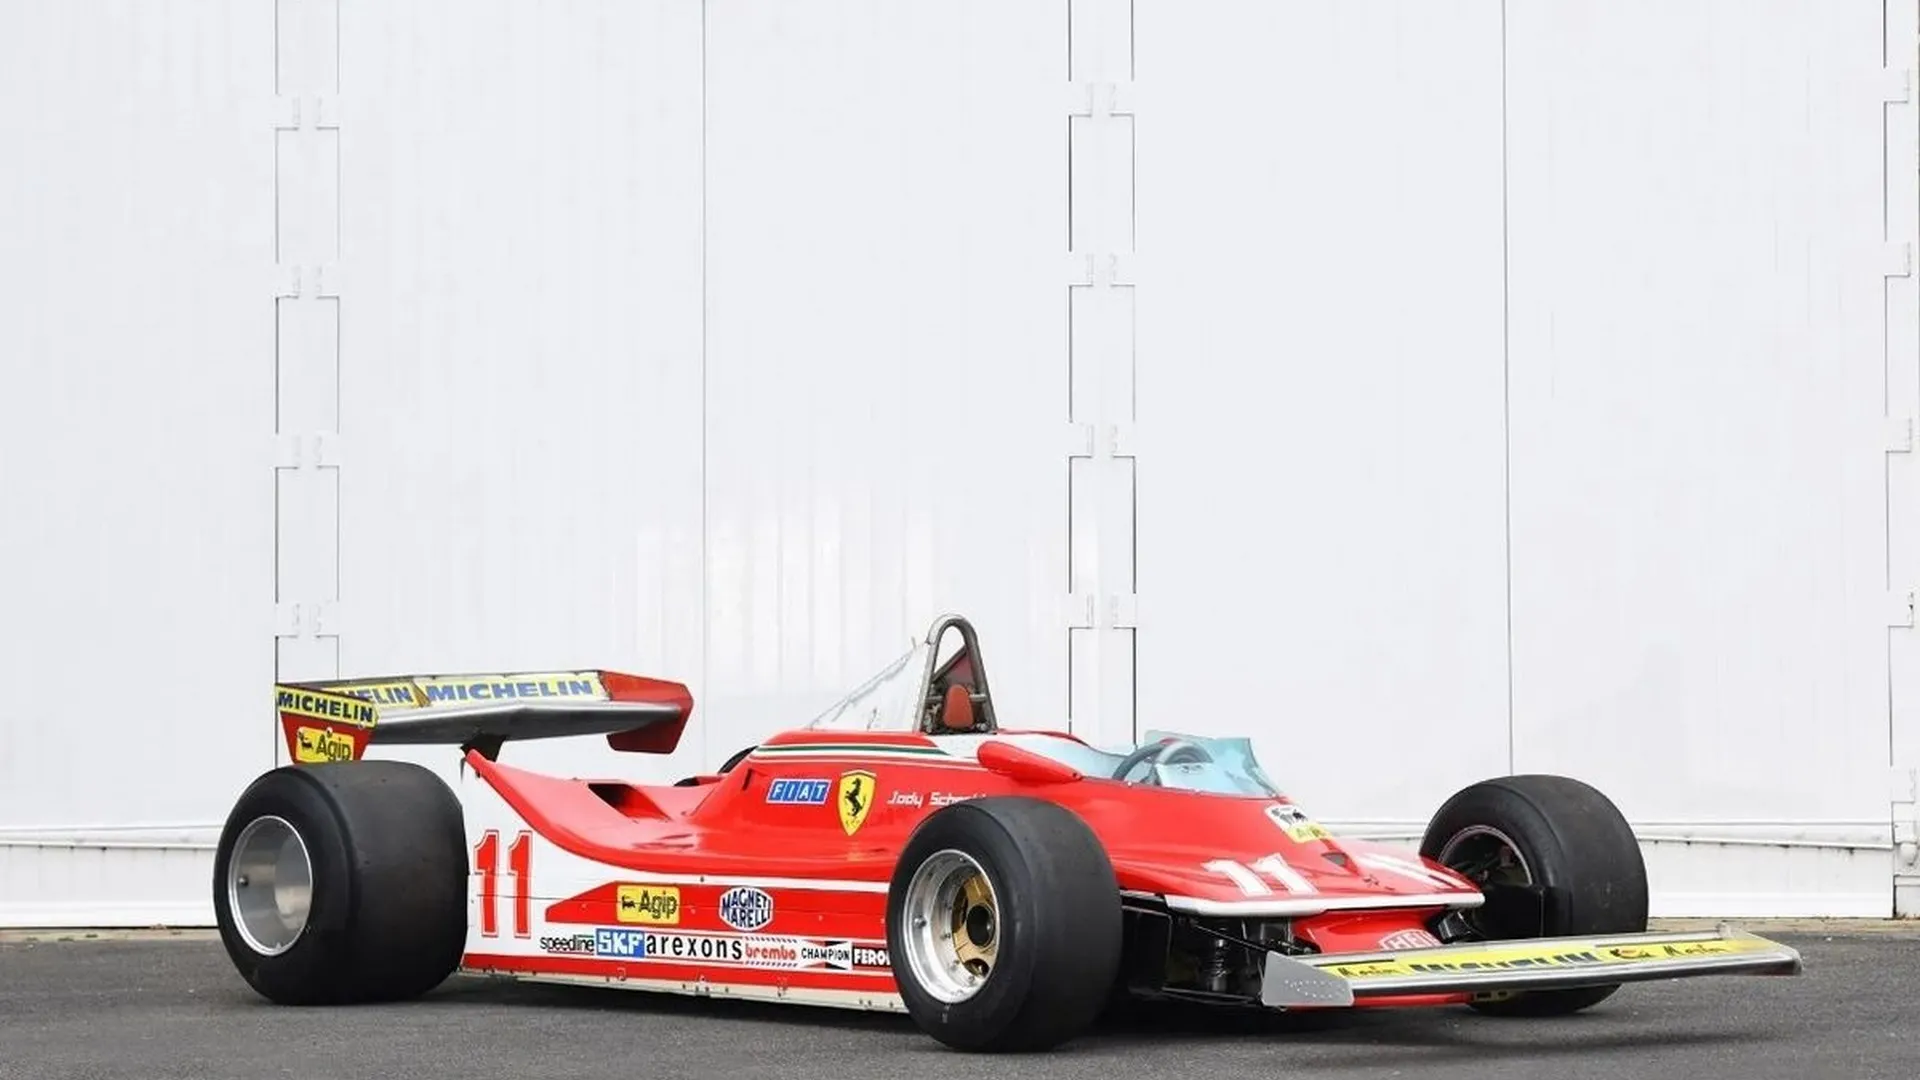 El Ferrari 312 T4 ganador del campeonato de Fórmula 1 sale a subasta